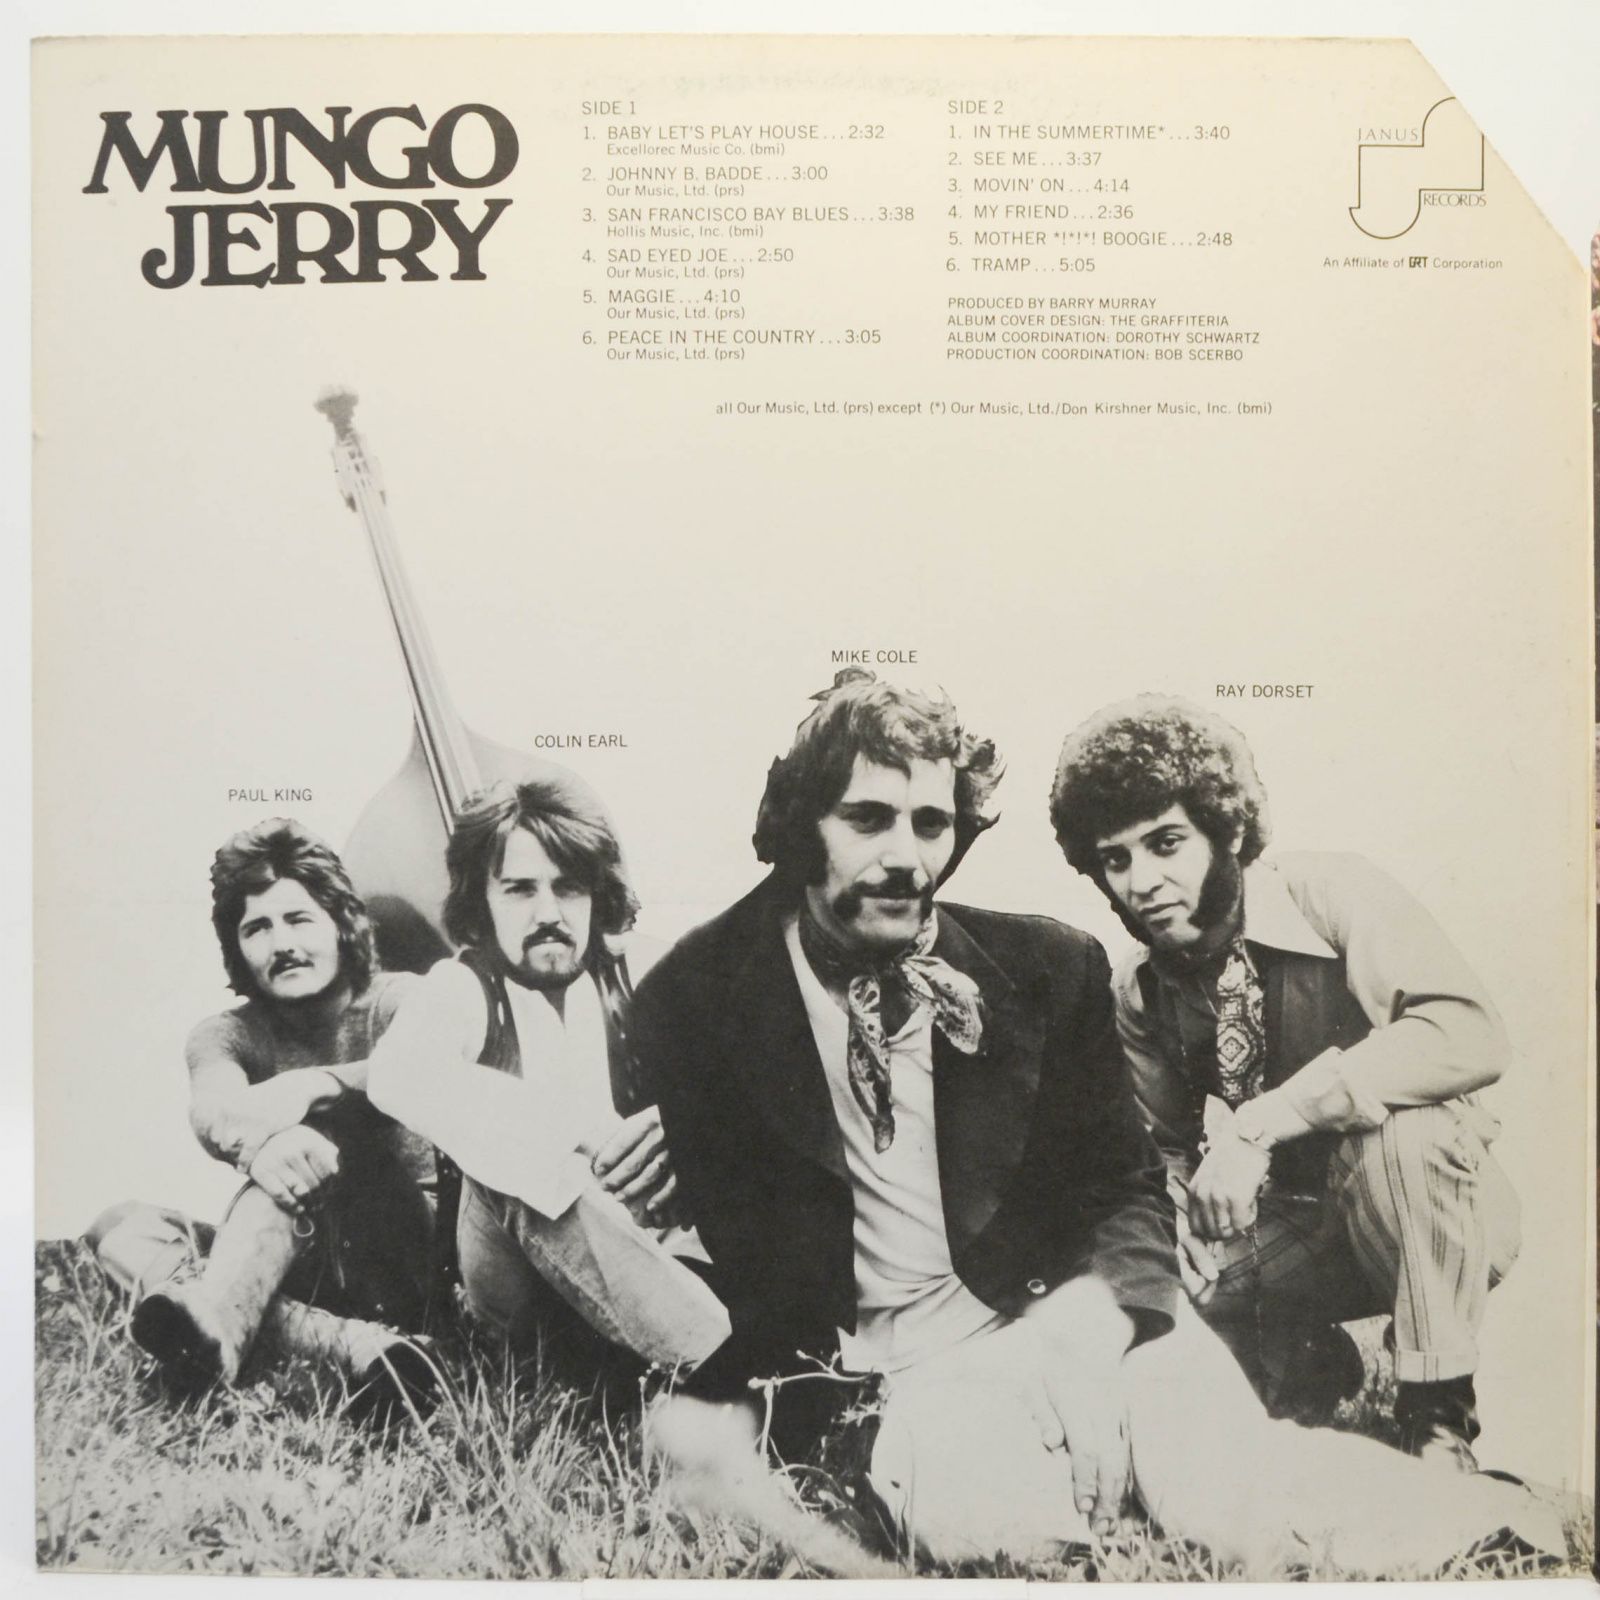 Mungo Jerry — Mungo Jerry, 1970